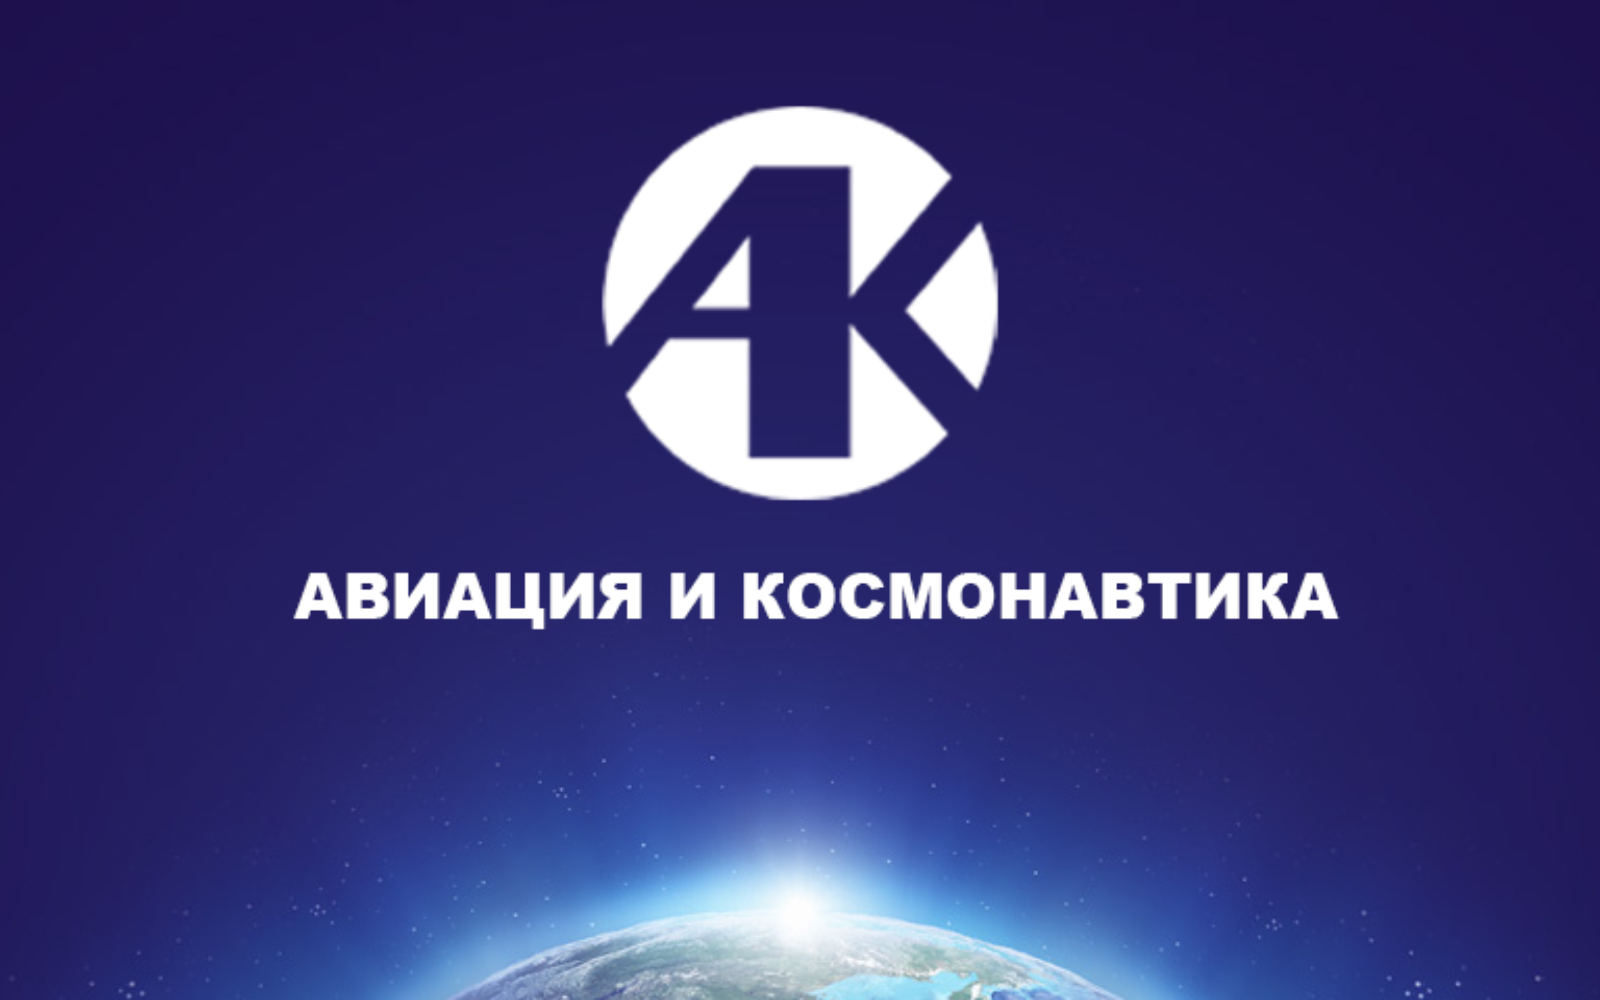 18-я Международная конференция «Авиация и космонавтика»